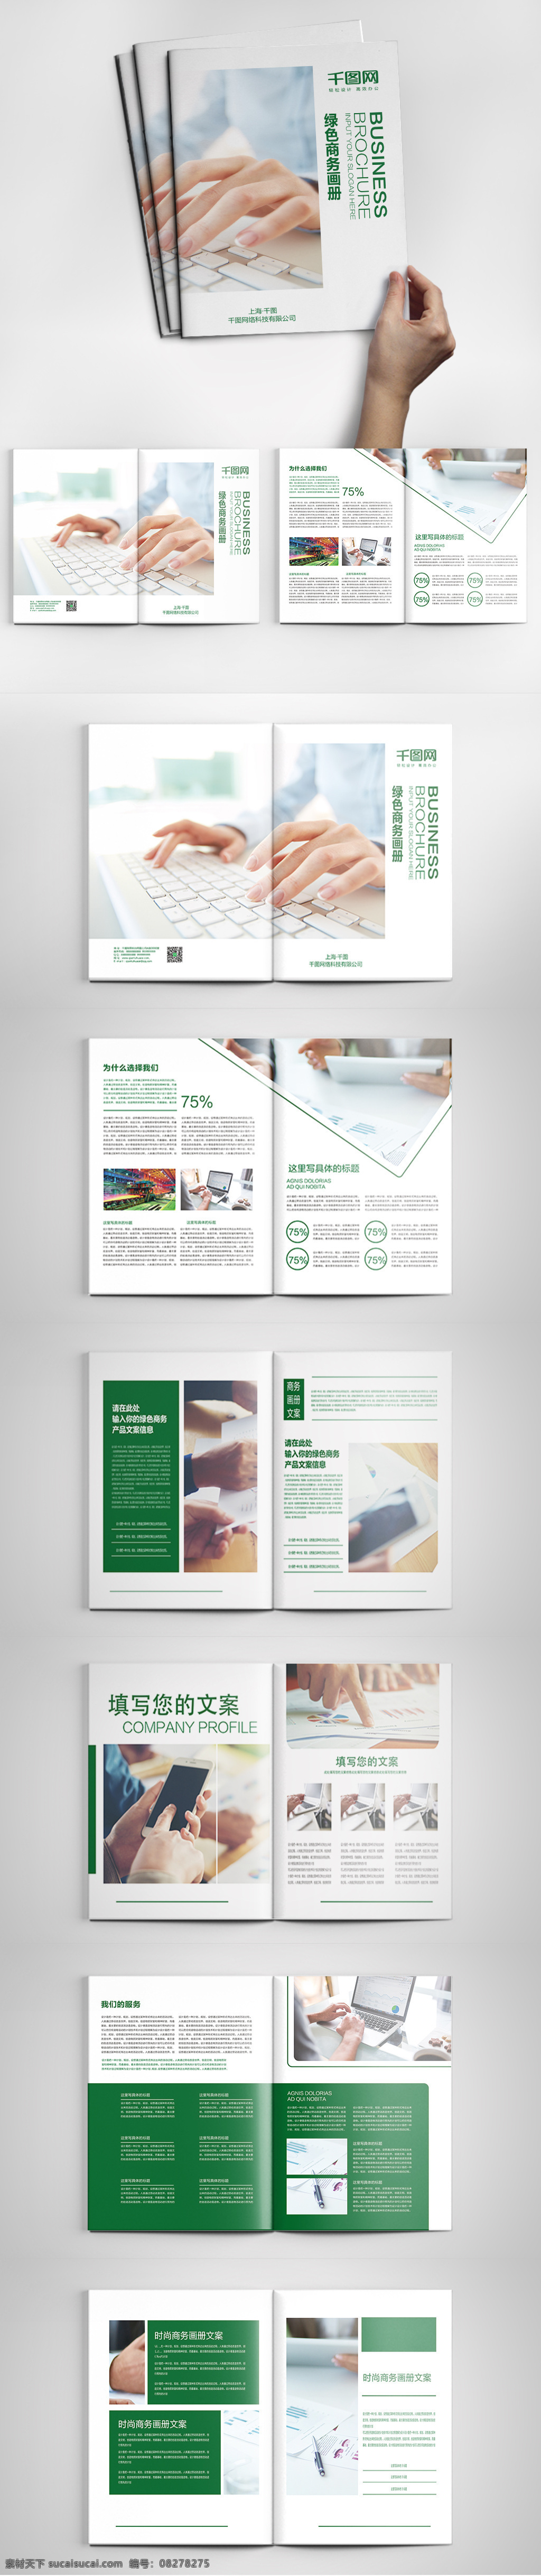 简约 绿色 商务 画册 模板 大气 绿色商务画册 企业画册 商务画册 商务宣传册 商业 宣传